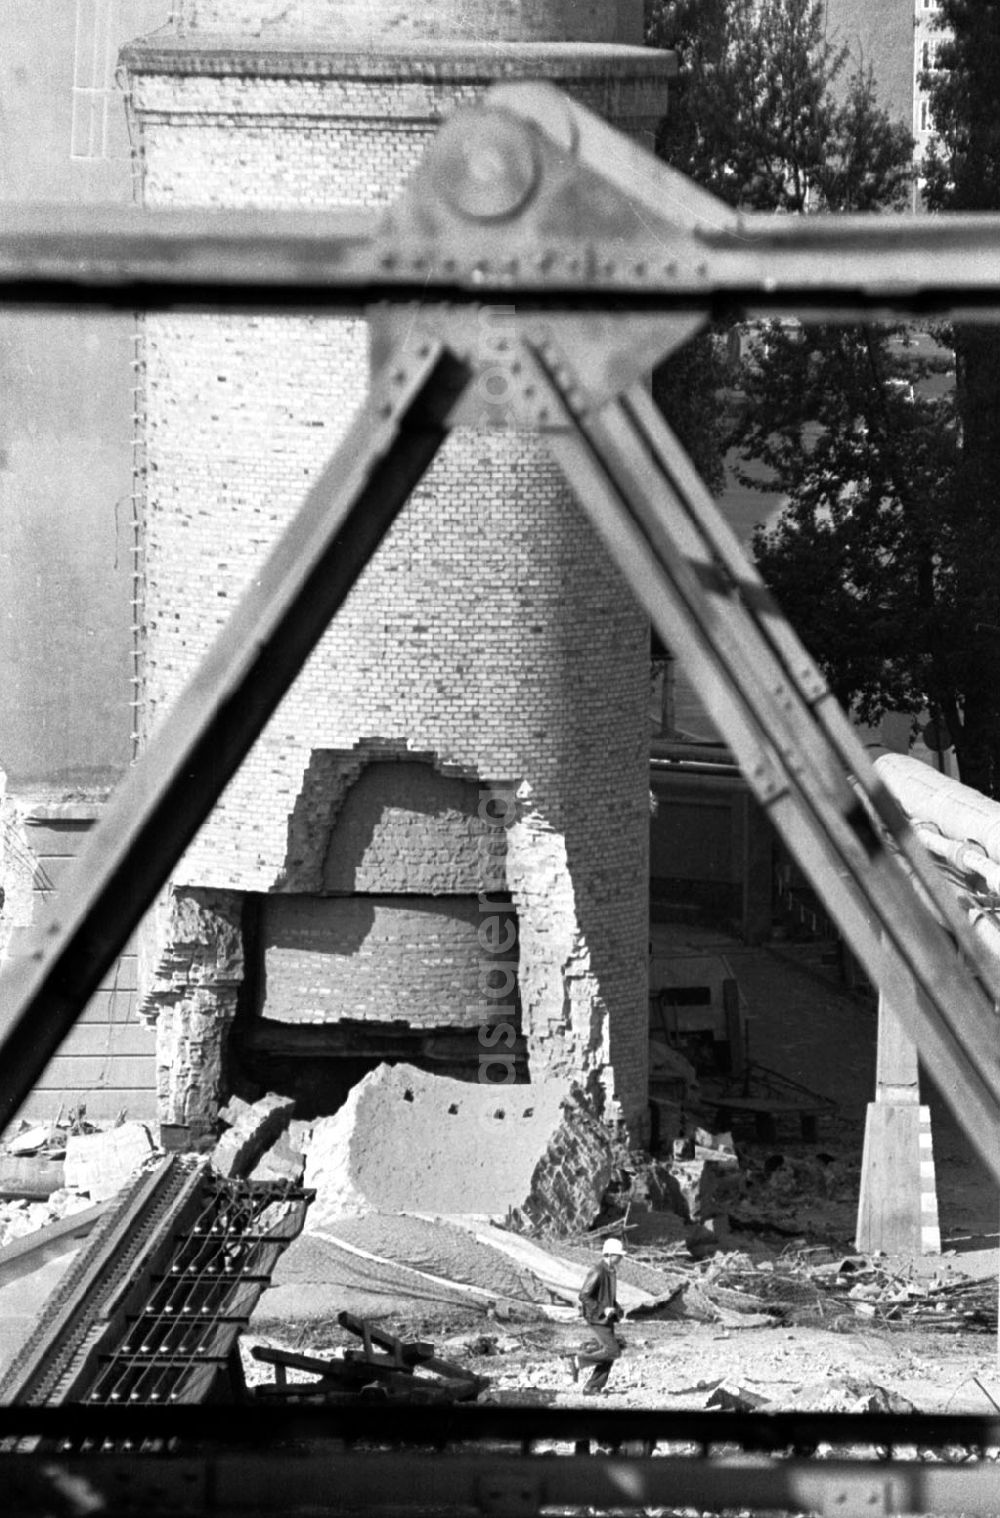 GDR picture archive: Berlin-Friedrichshain - Friedrichshain - Berlin Sprengung des 2. Schornstein des Friedrichshainer Heizkraftwerkes 12.10.9